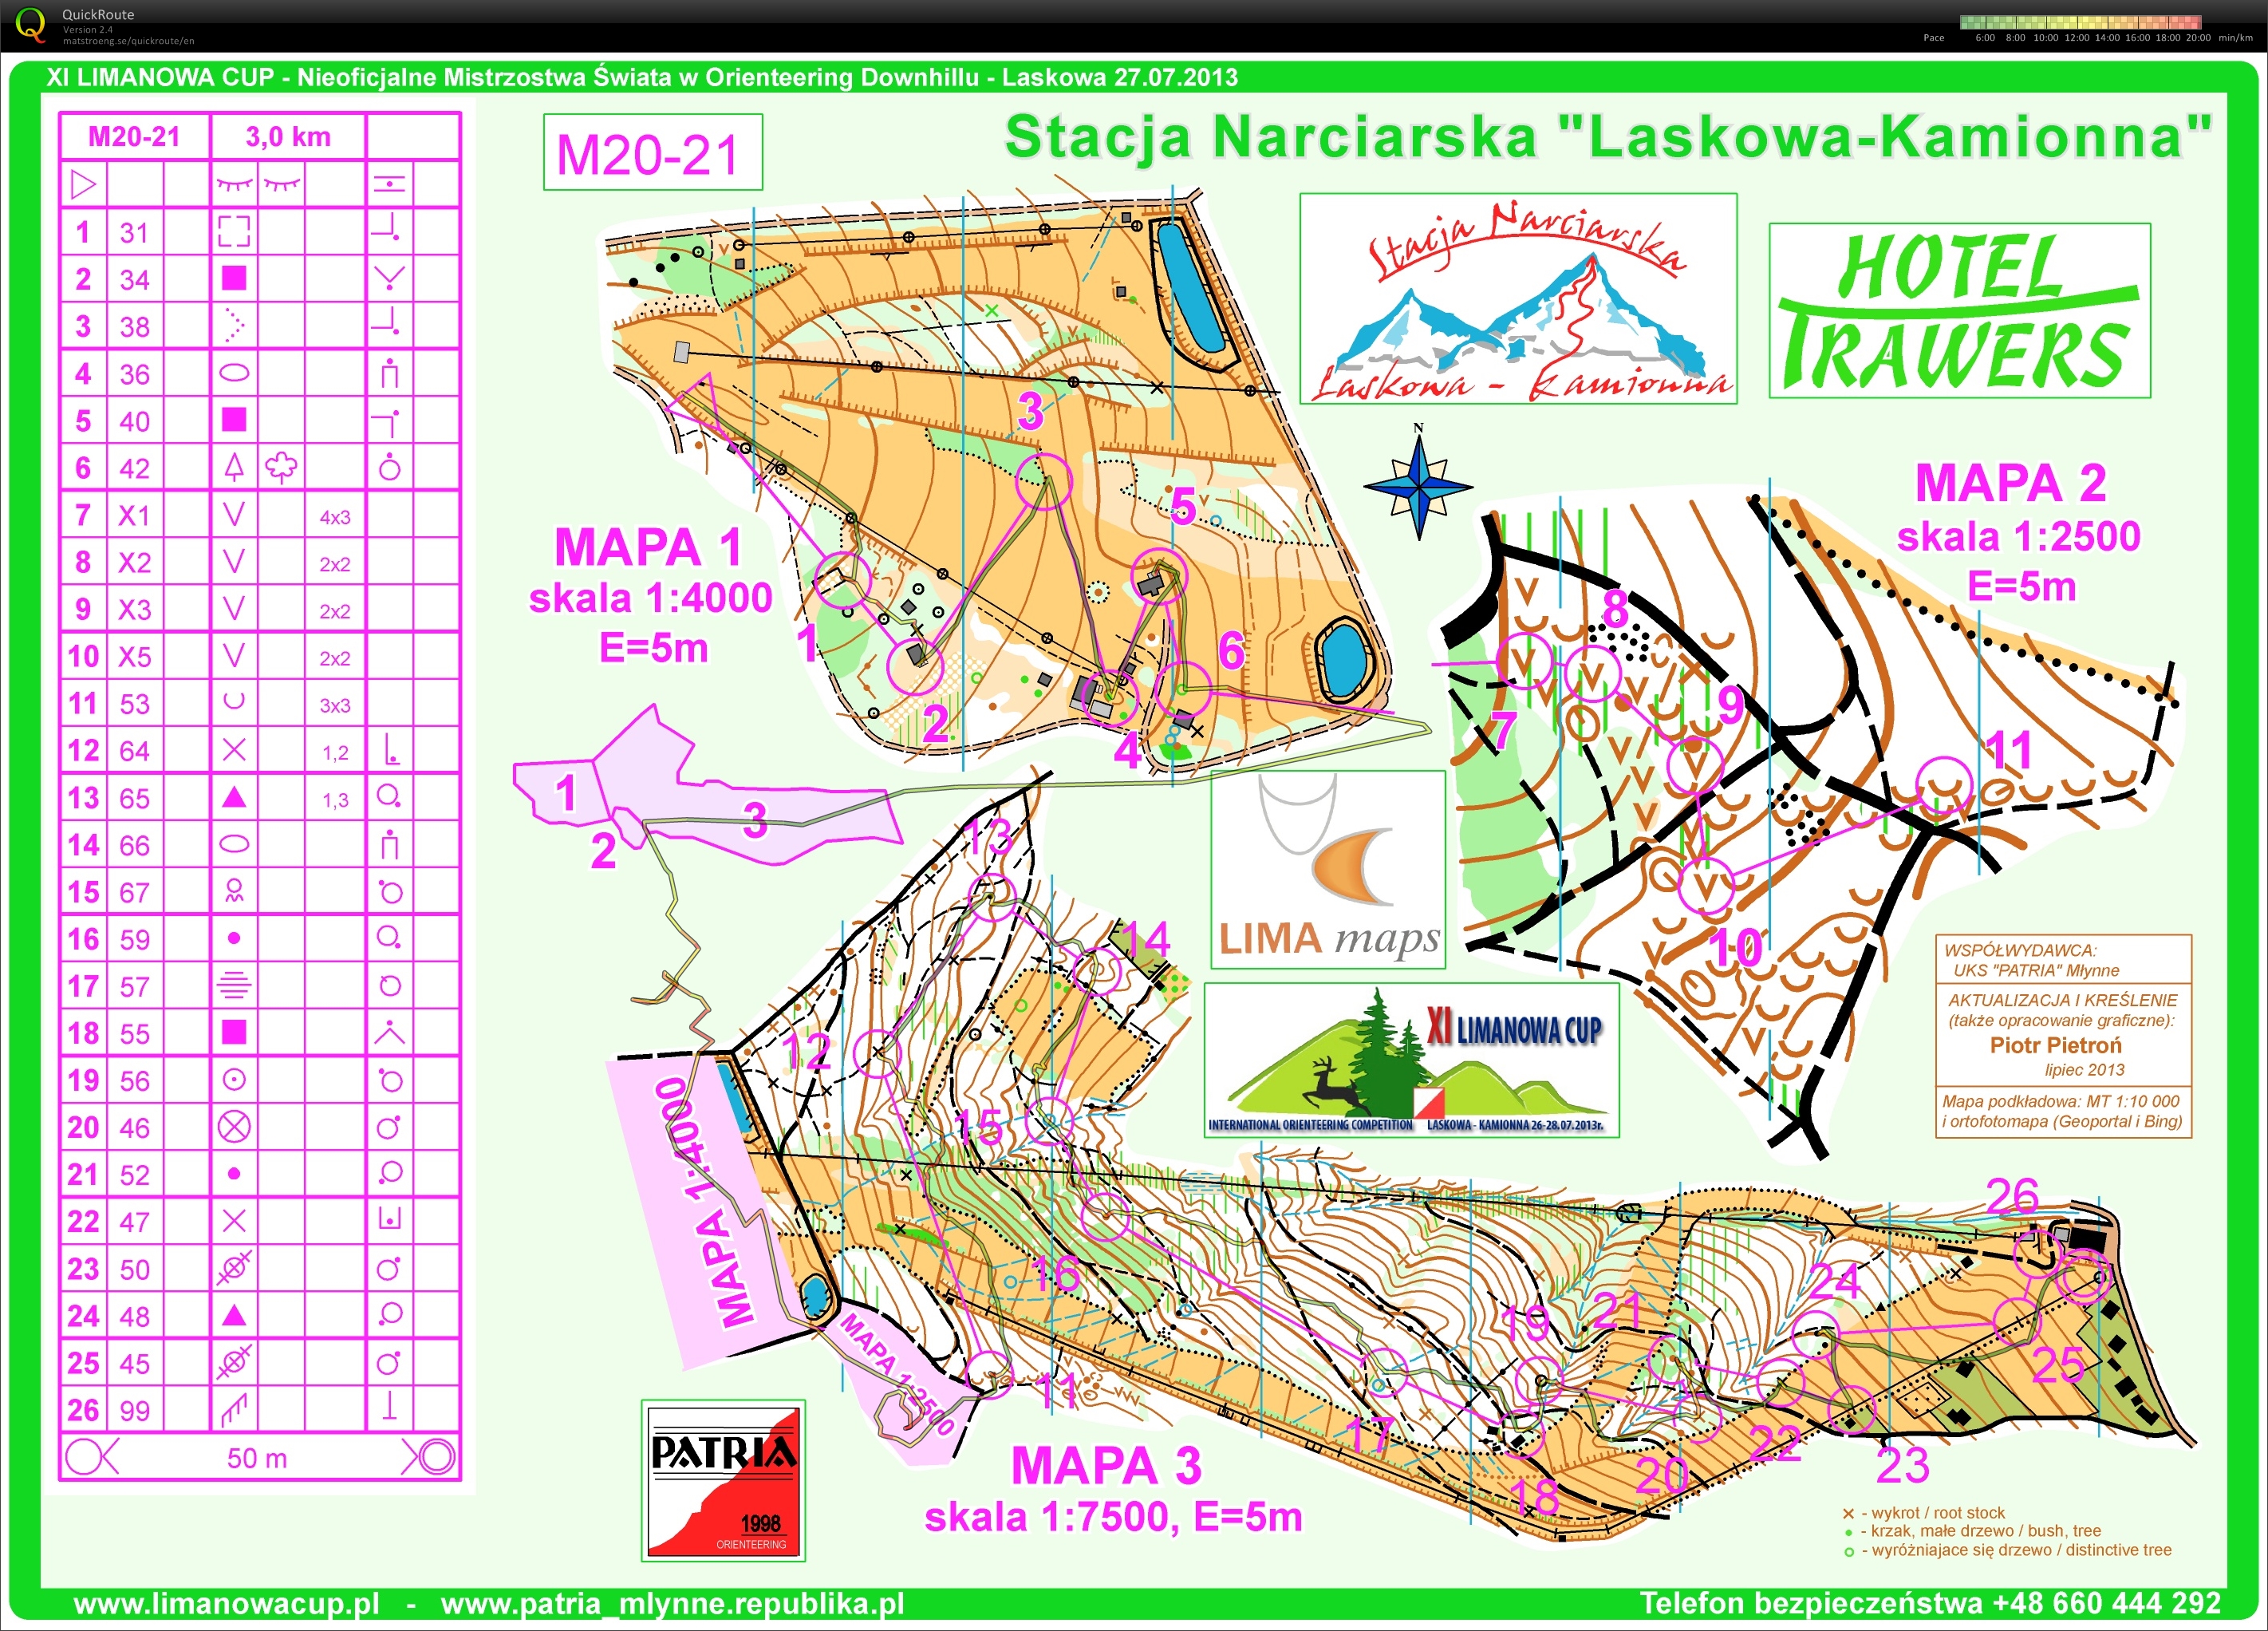 Z215 - Limanowa Cup - downhill (2013-07-27)